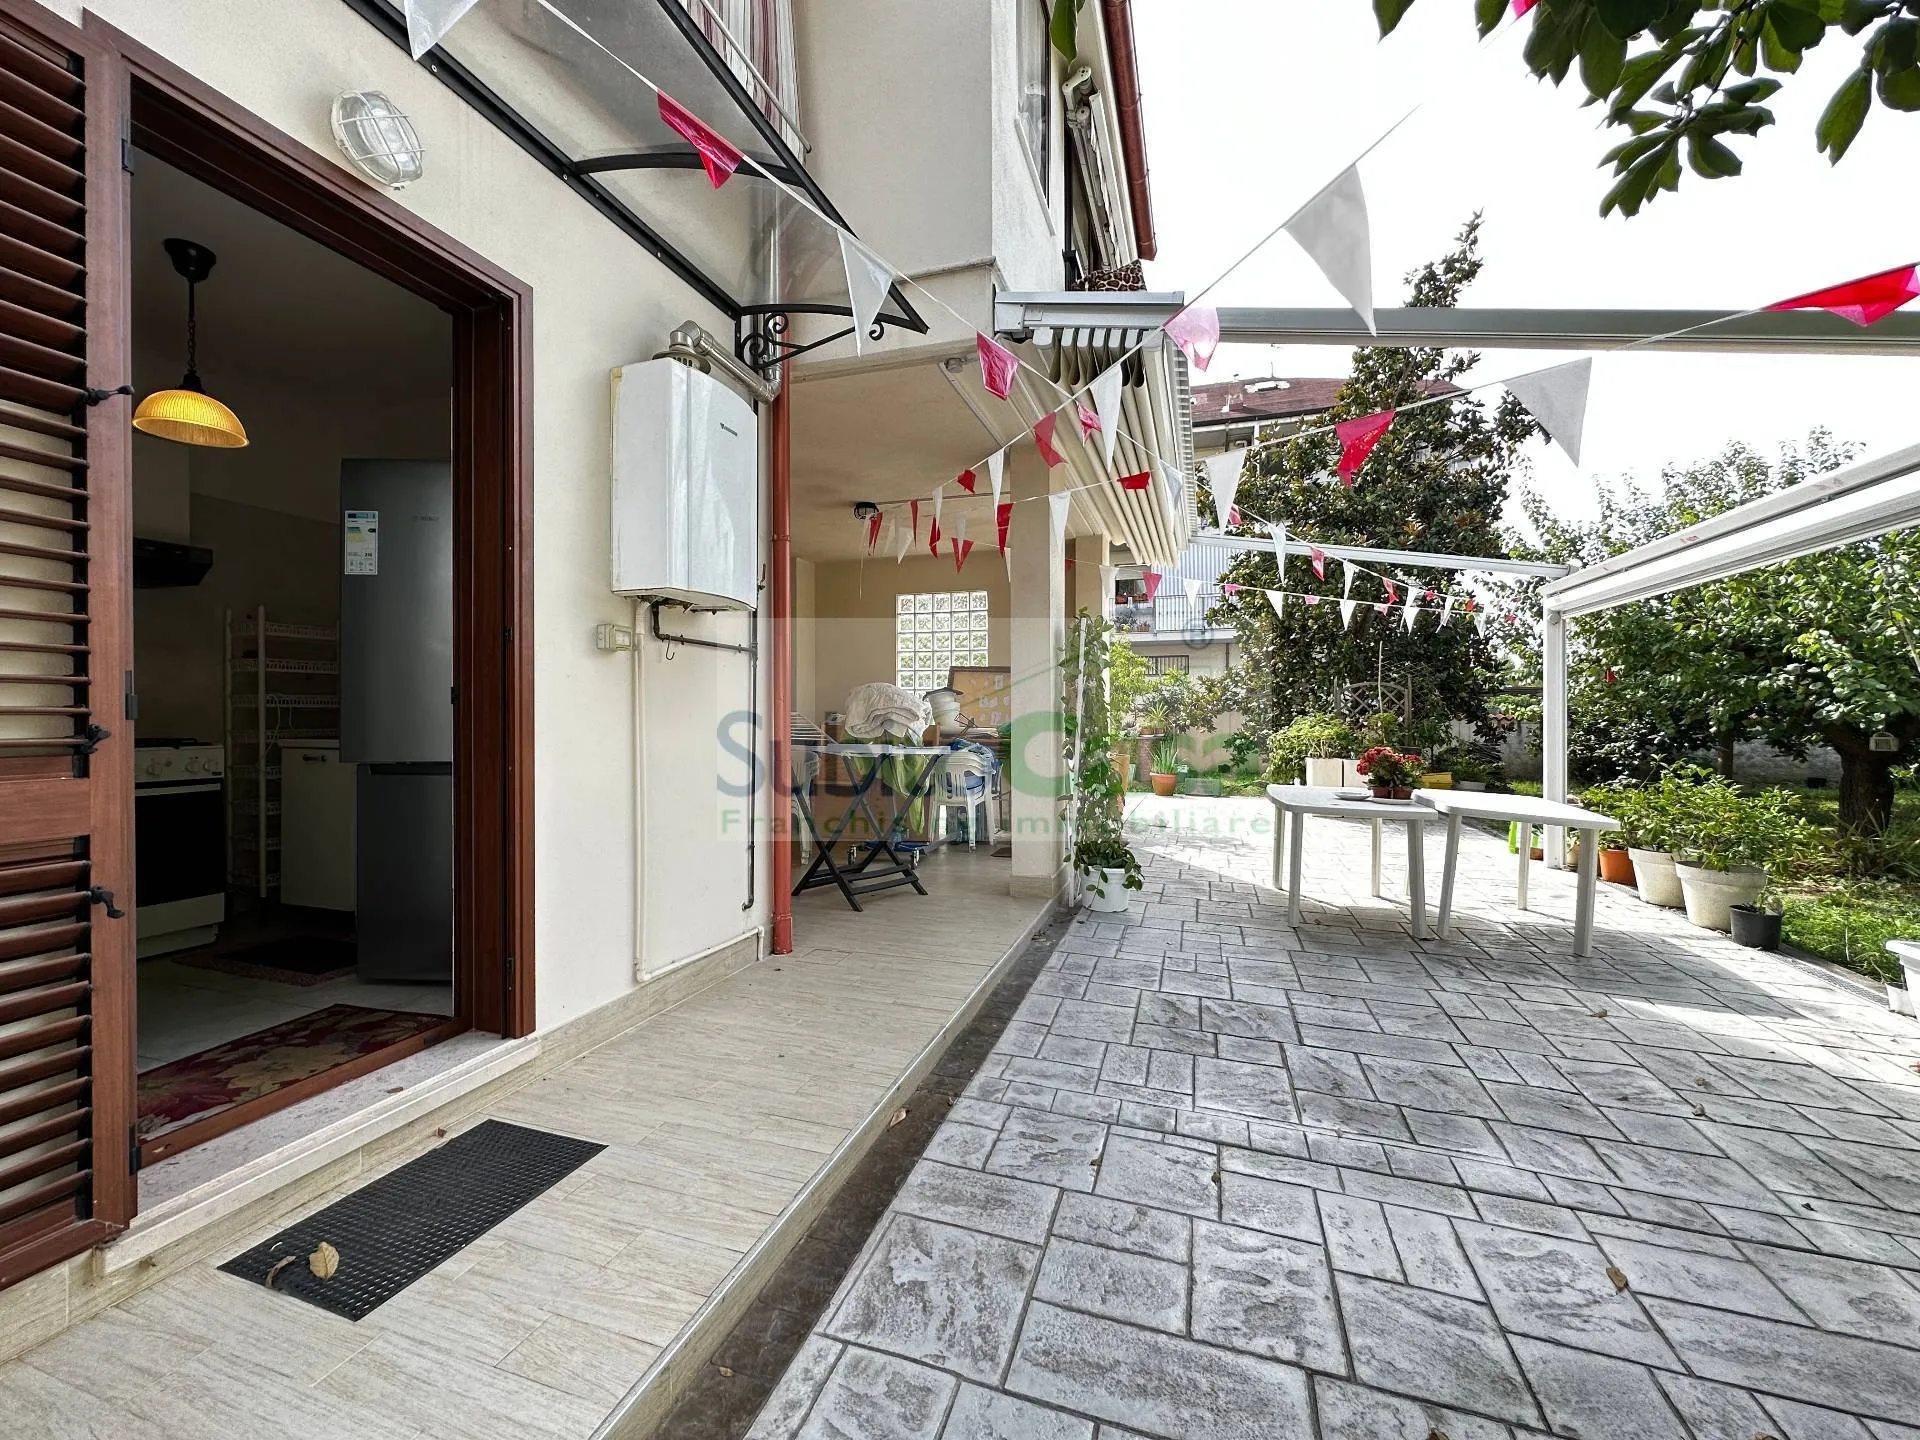 Immagine per Appartamento in affitto a Chieti Via B. Croce